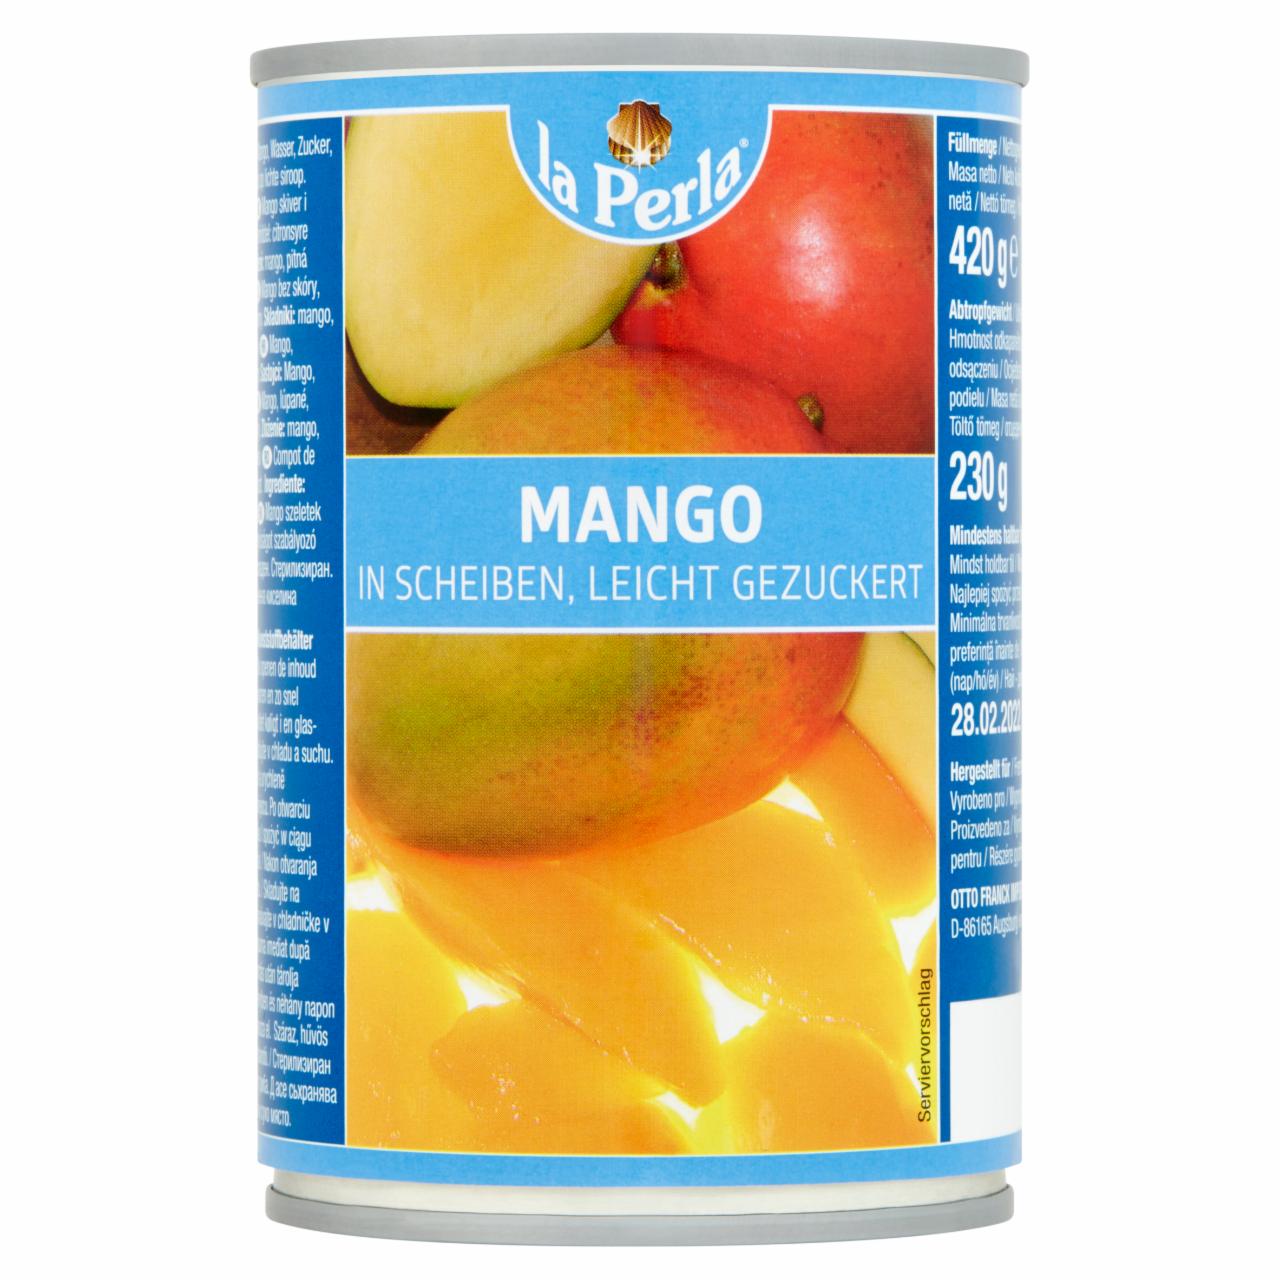 Képek - La Perla mangó szeletek cukrozott lében 420 g